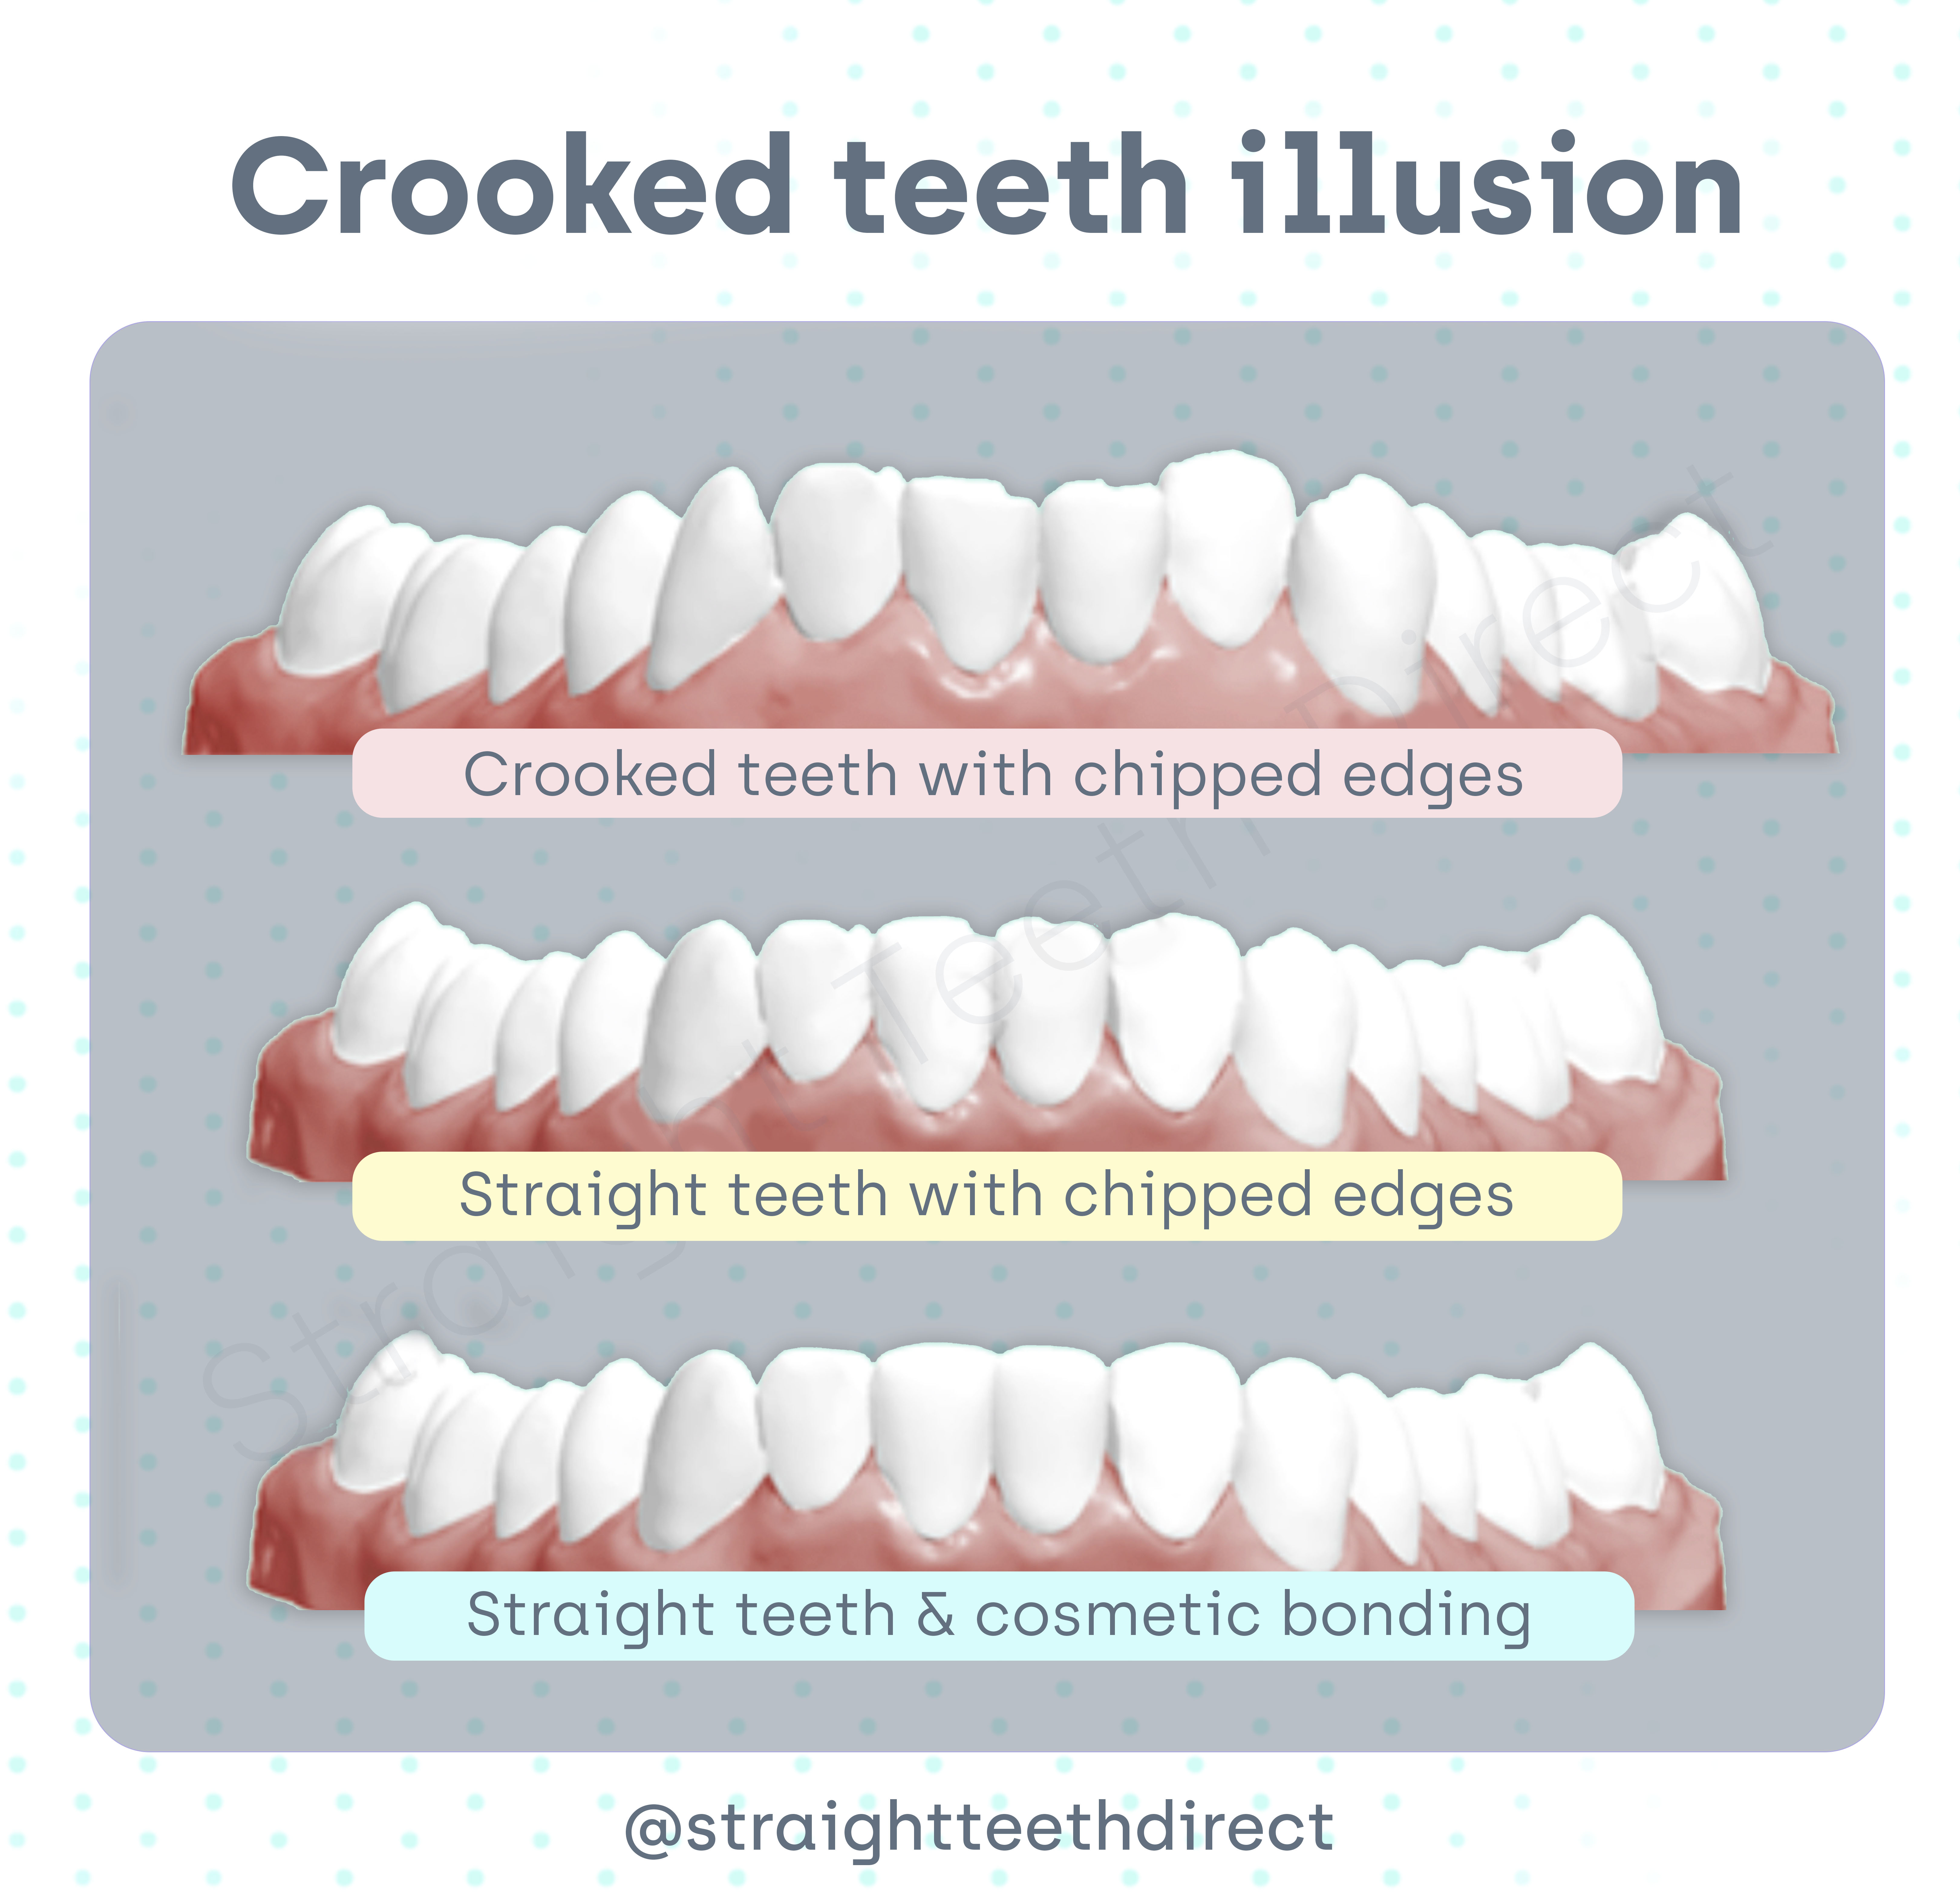 crooked teeth illusion